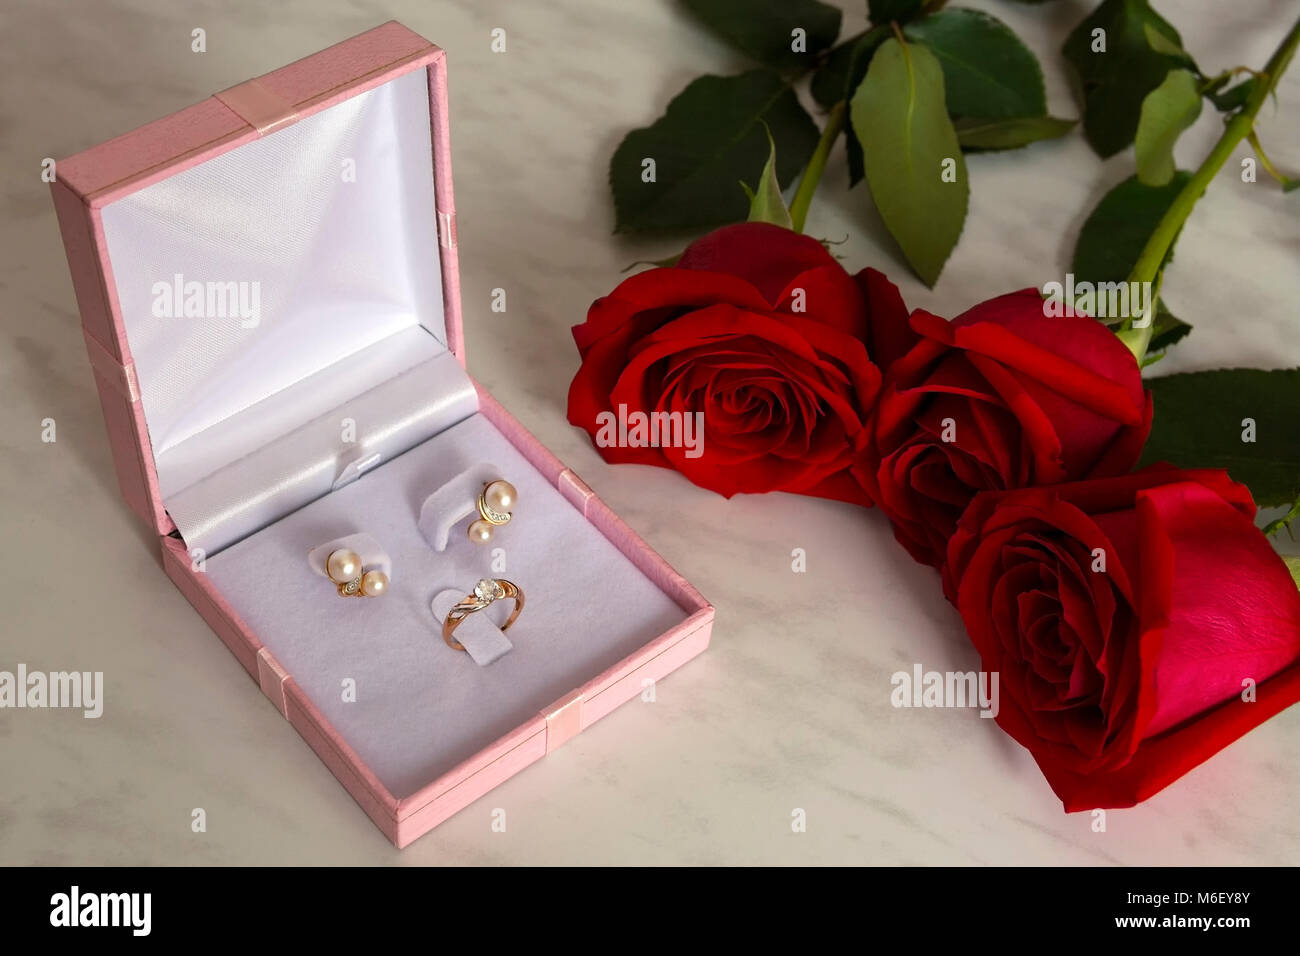 Orecchini perla e golden ring in una confezione regalo con rose rosse su sfondo marmo. Nozze, il giorno di san valentino Foto Stock